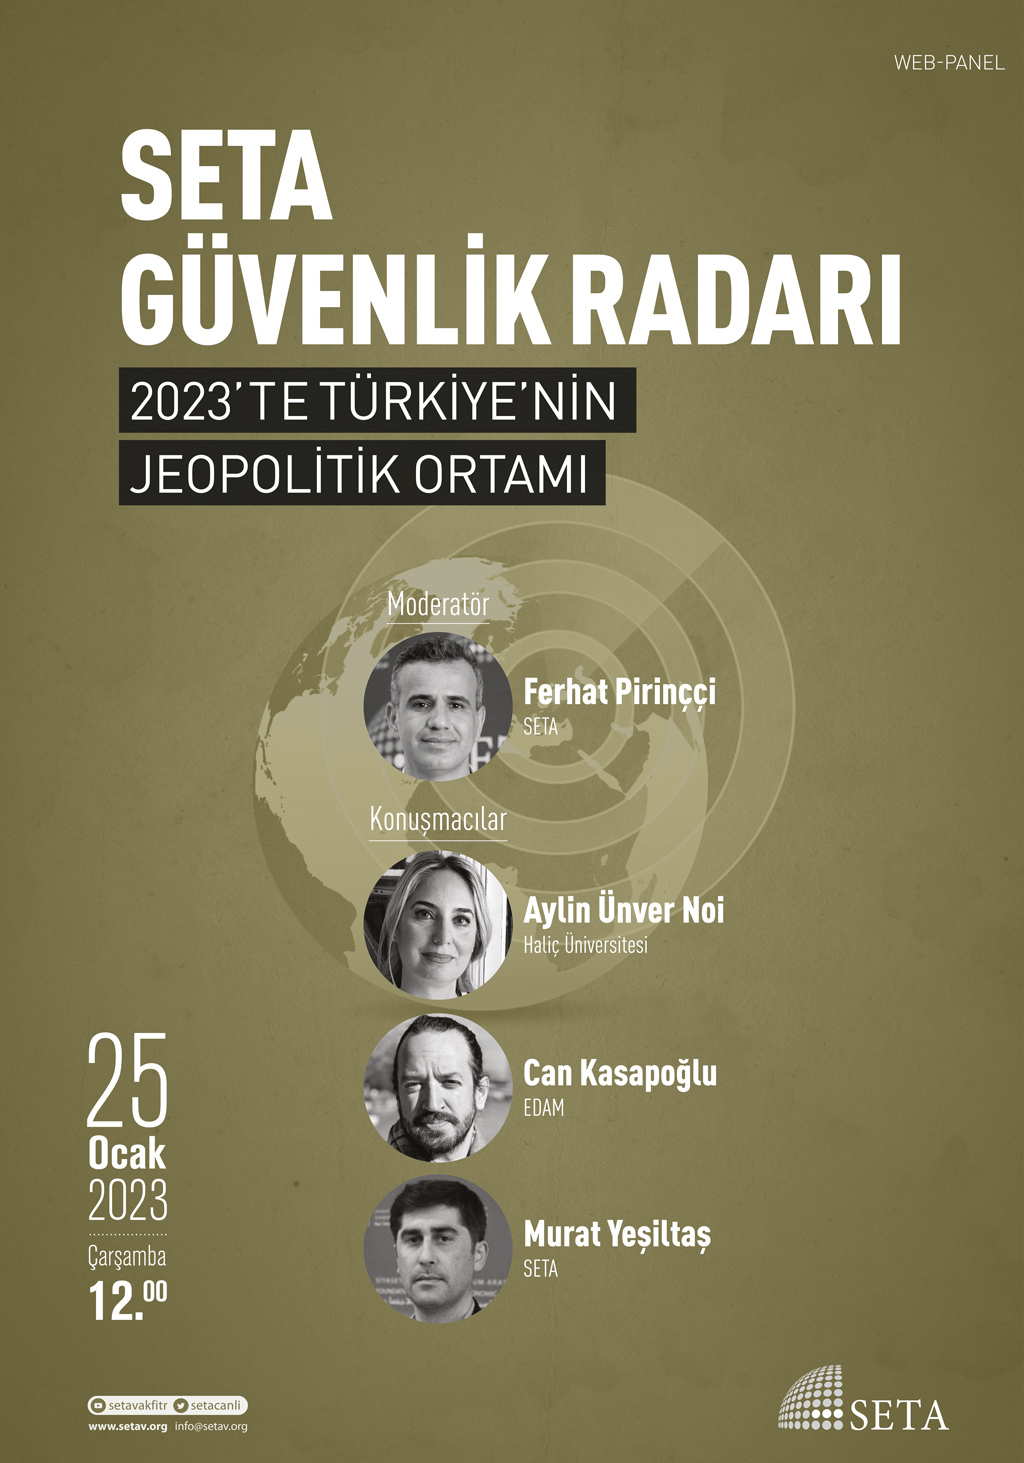 Web Panel: SETA Güvenlik Radarı | 2023’te Türkiye’nin Jeopolitik Ortamı